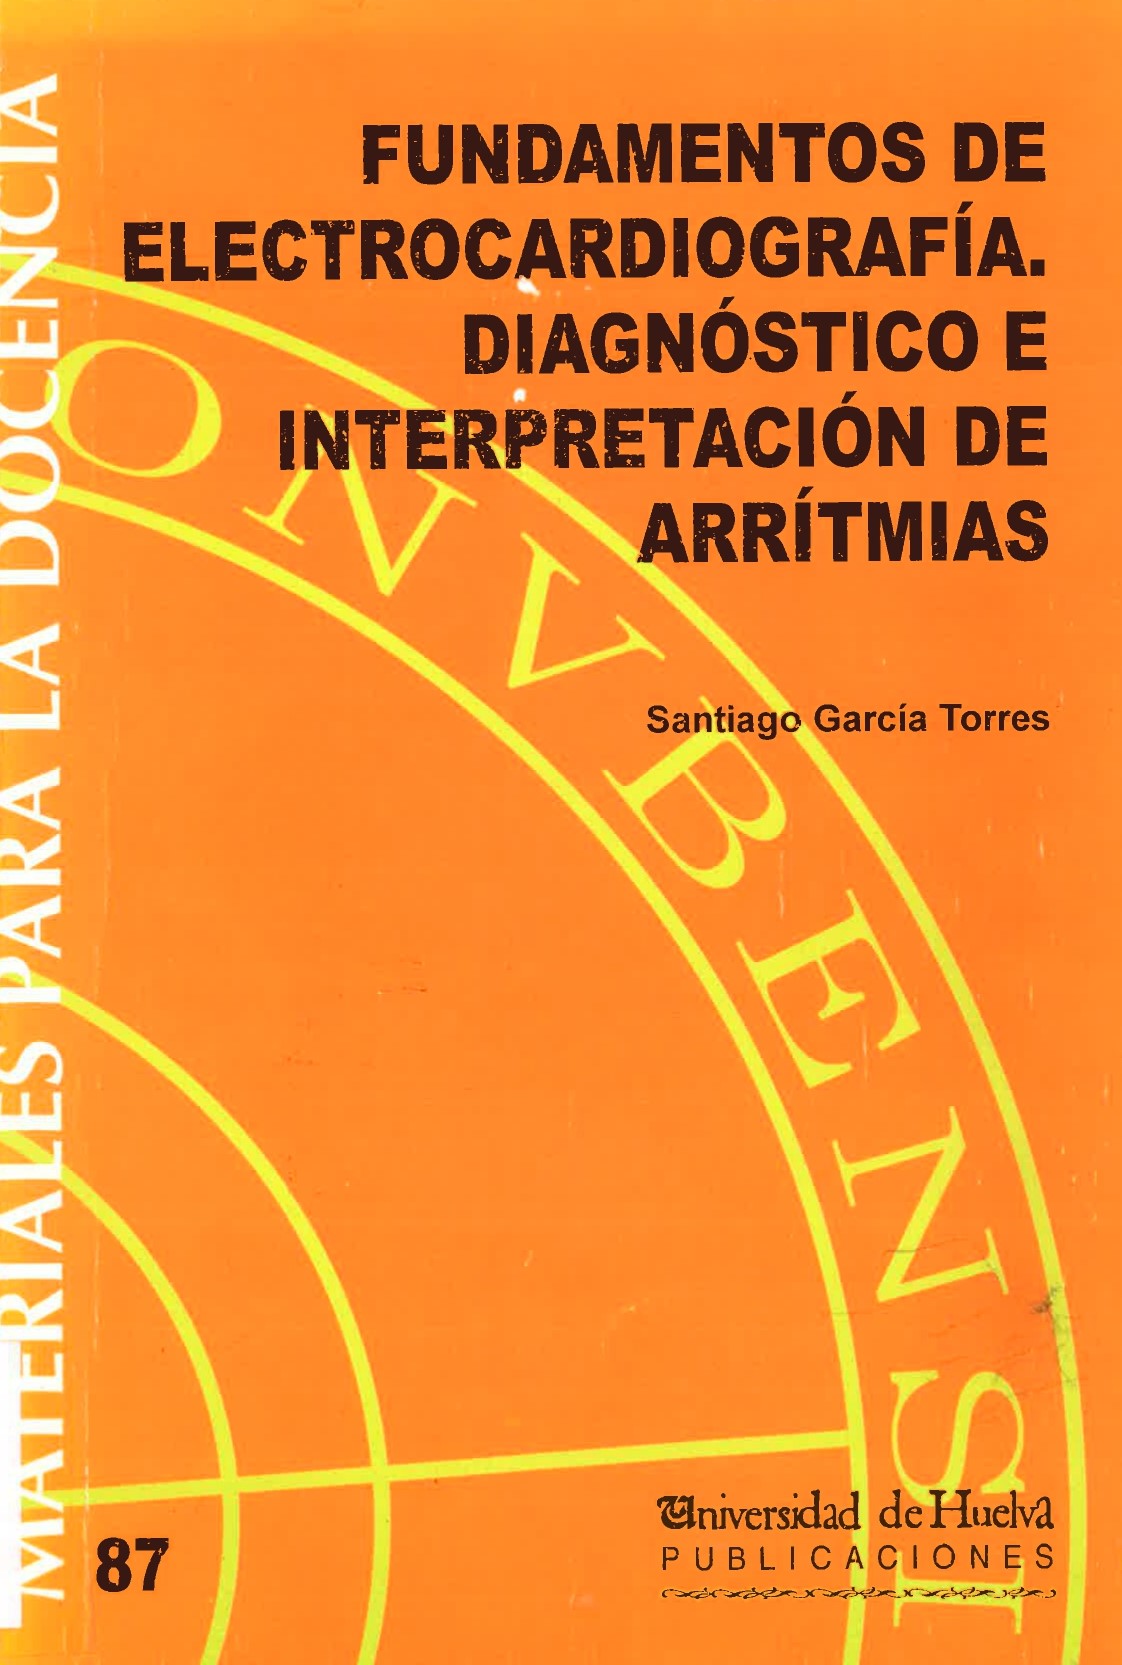 Imagen de portada del libro Fundamentos de Electrocardiografía. Diagnóstico e Interpretación de Arritmias